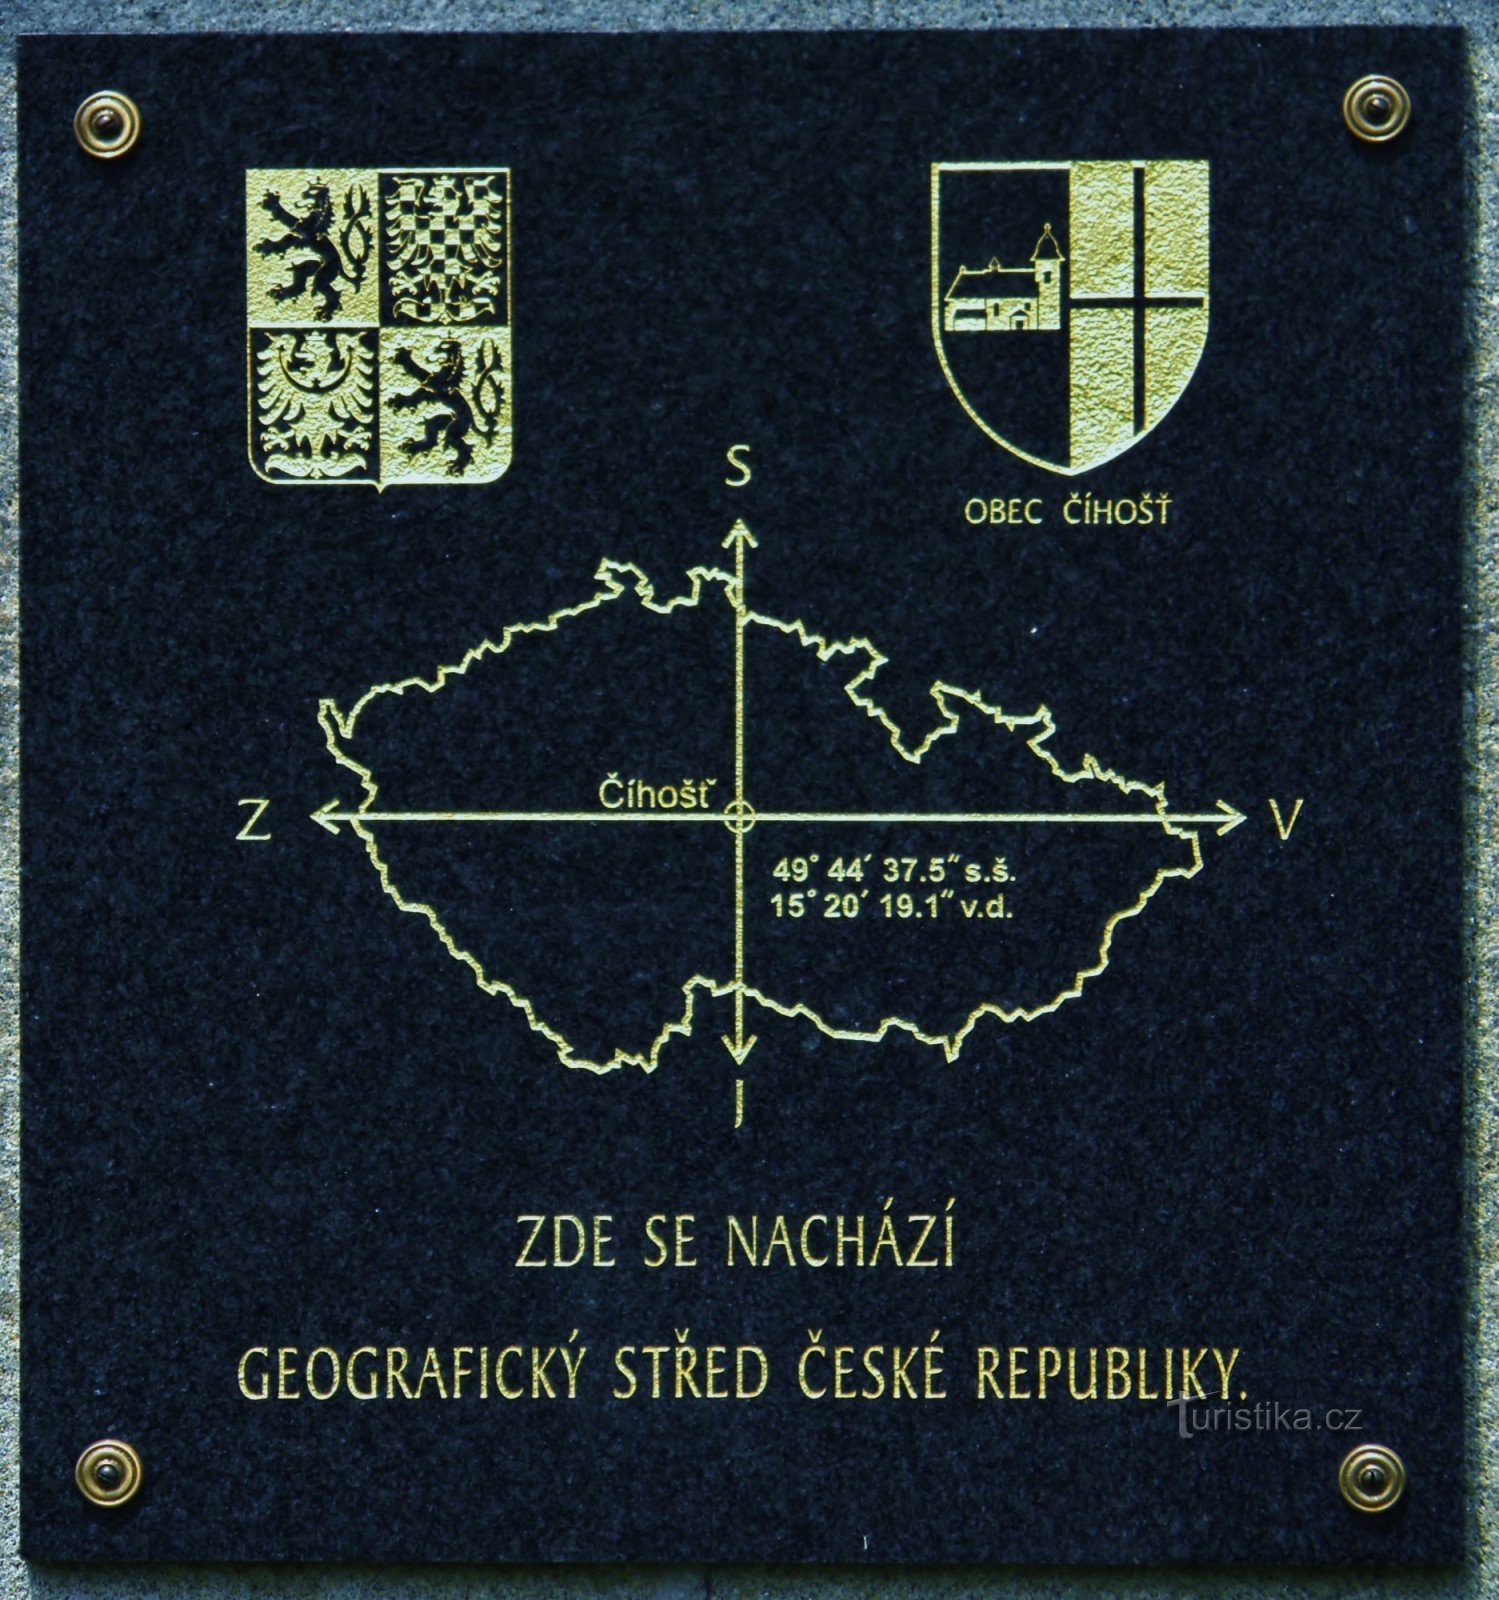 Informatiebord op een stenen monument in het geografische centrum van Tsjechië.